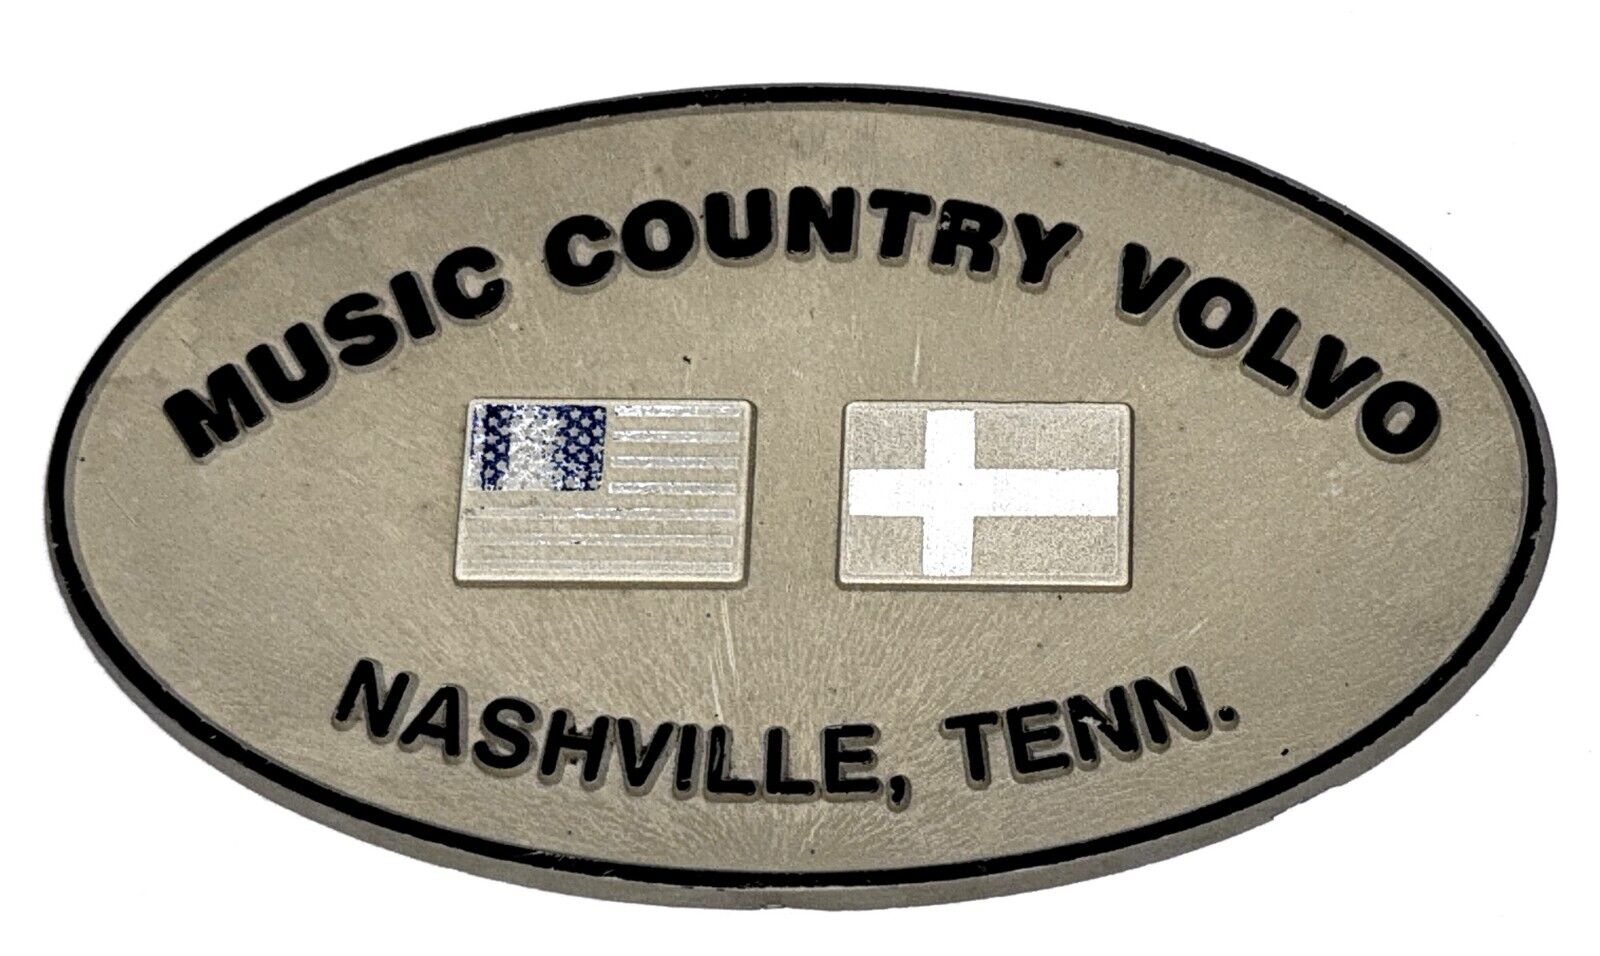 Vintage Music Country Volvo Nashville, TN Dealer Advertising Nameplate Emblem